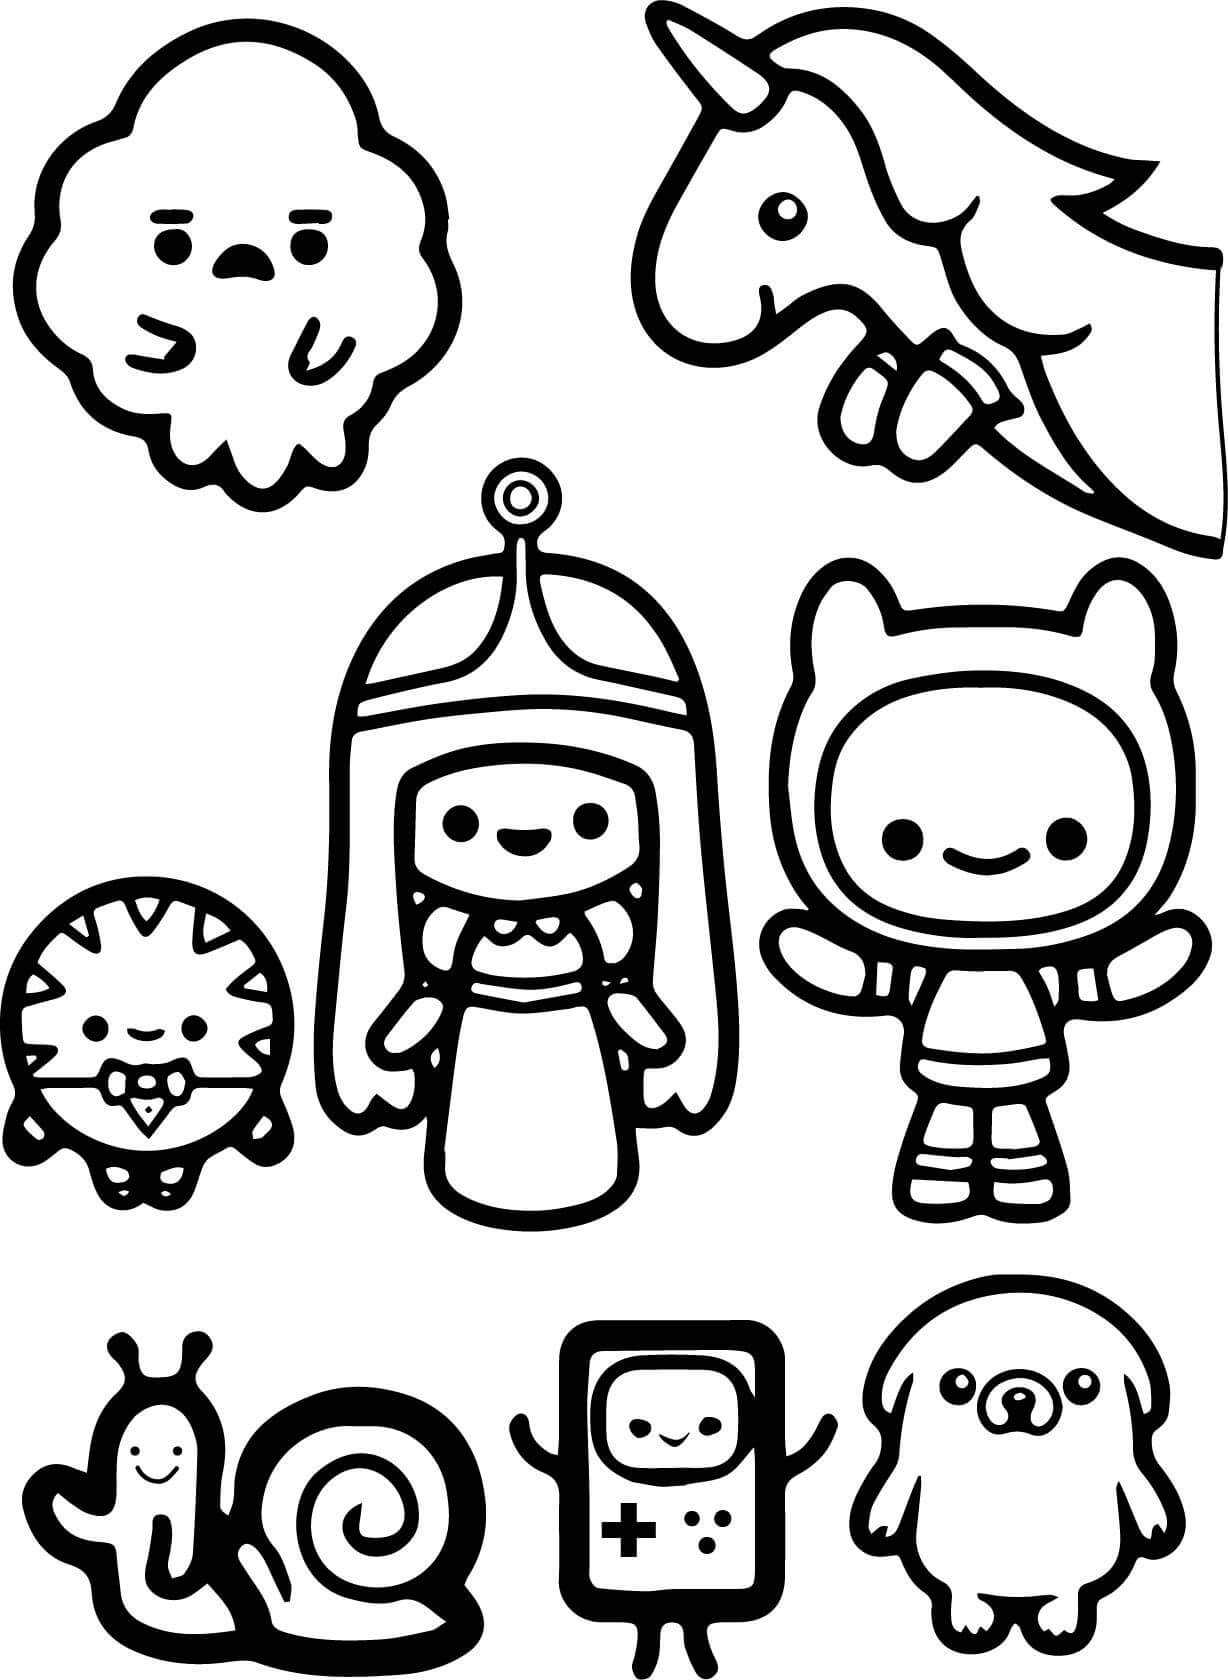 Personagens do Adventure Time Chibi para colorir